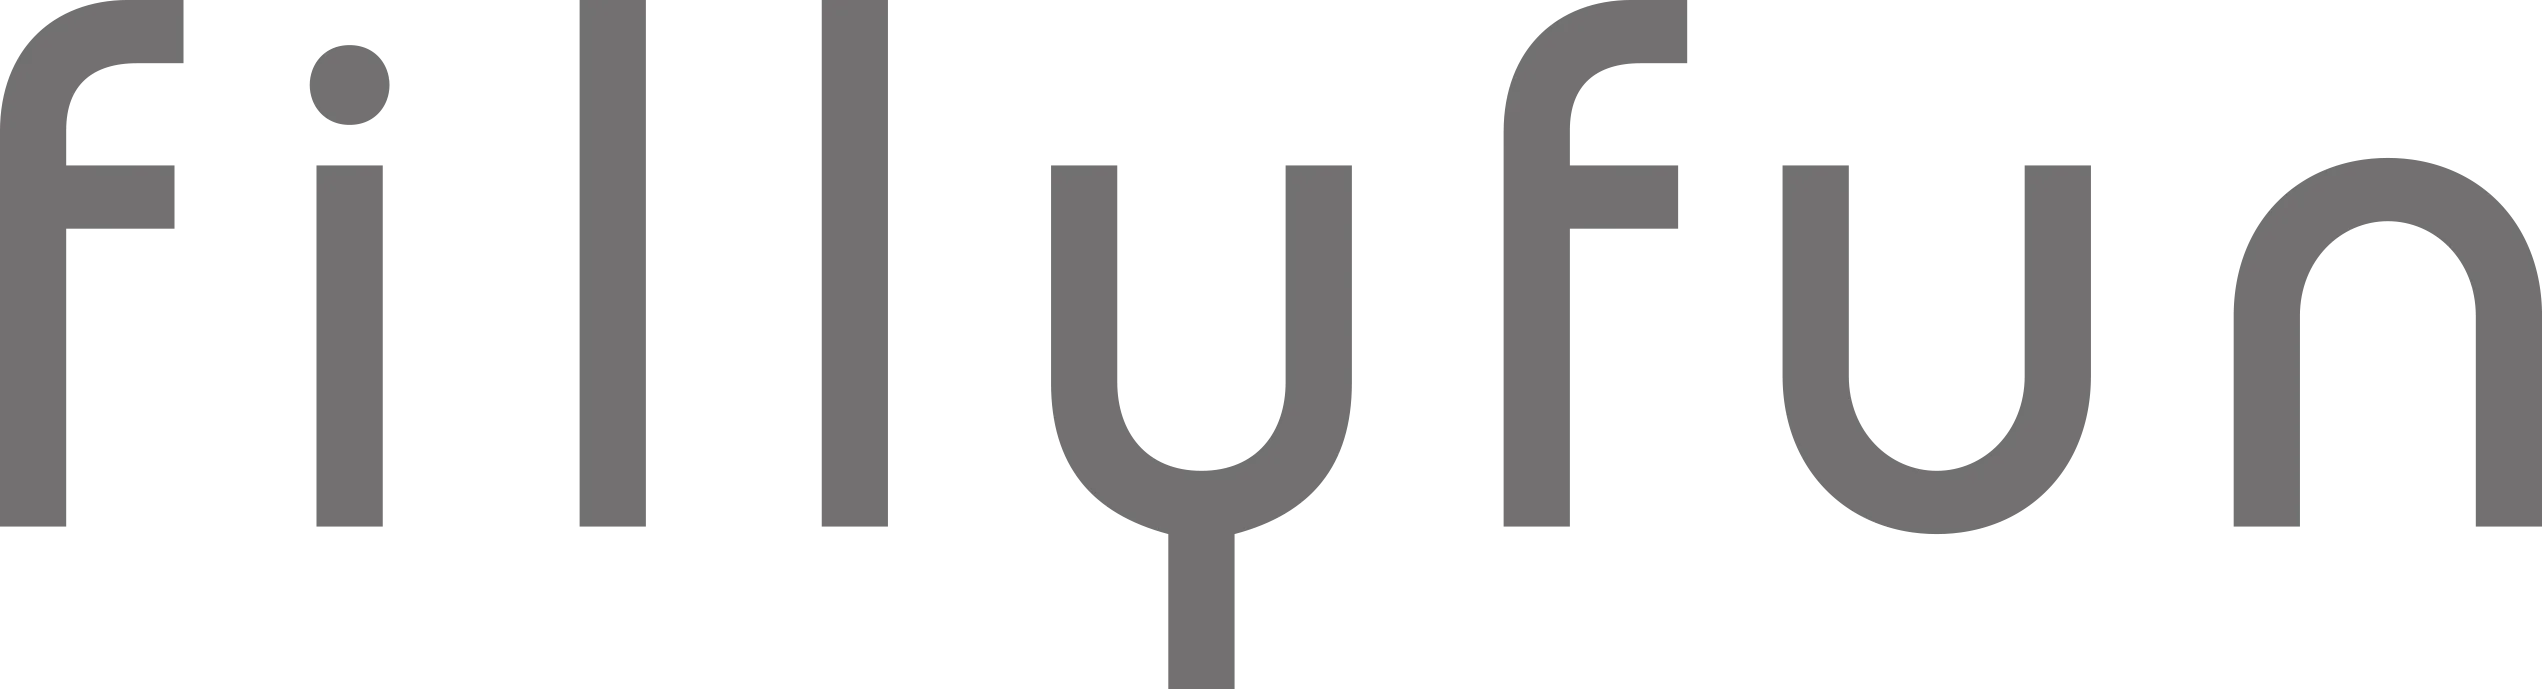 fillyfun_logo